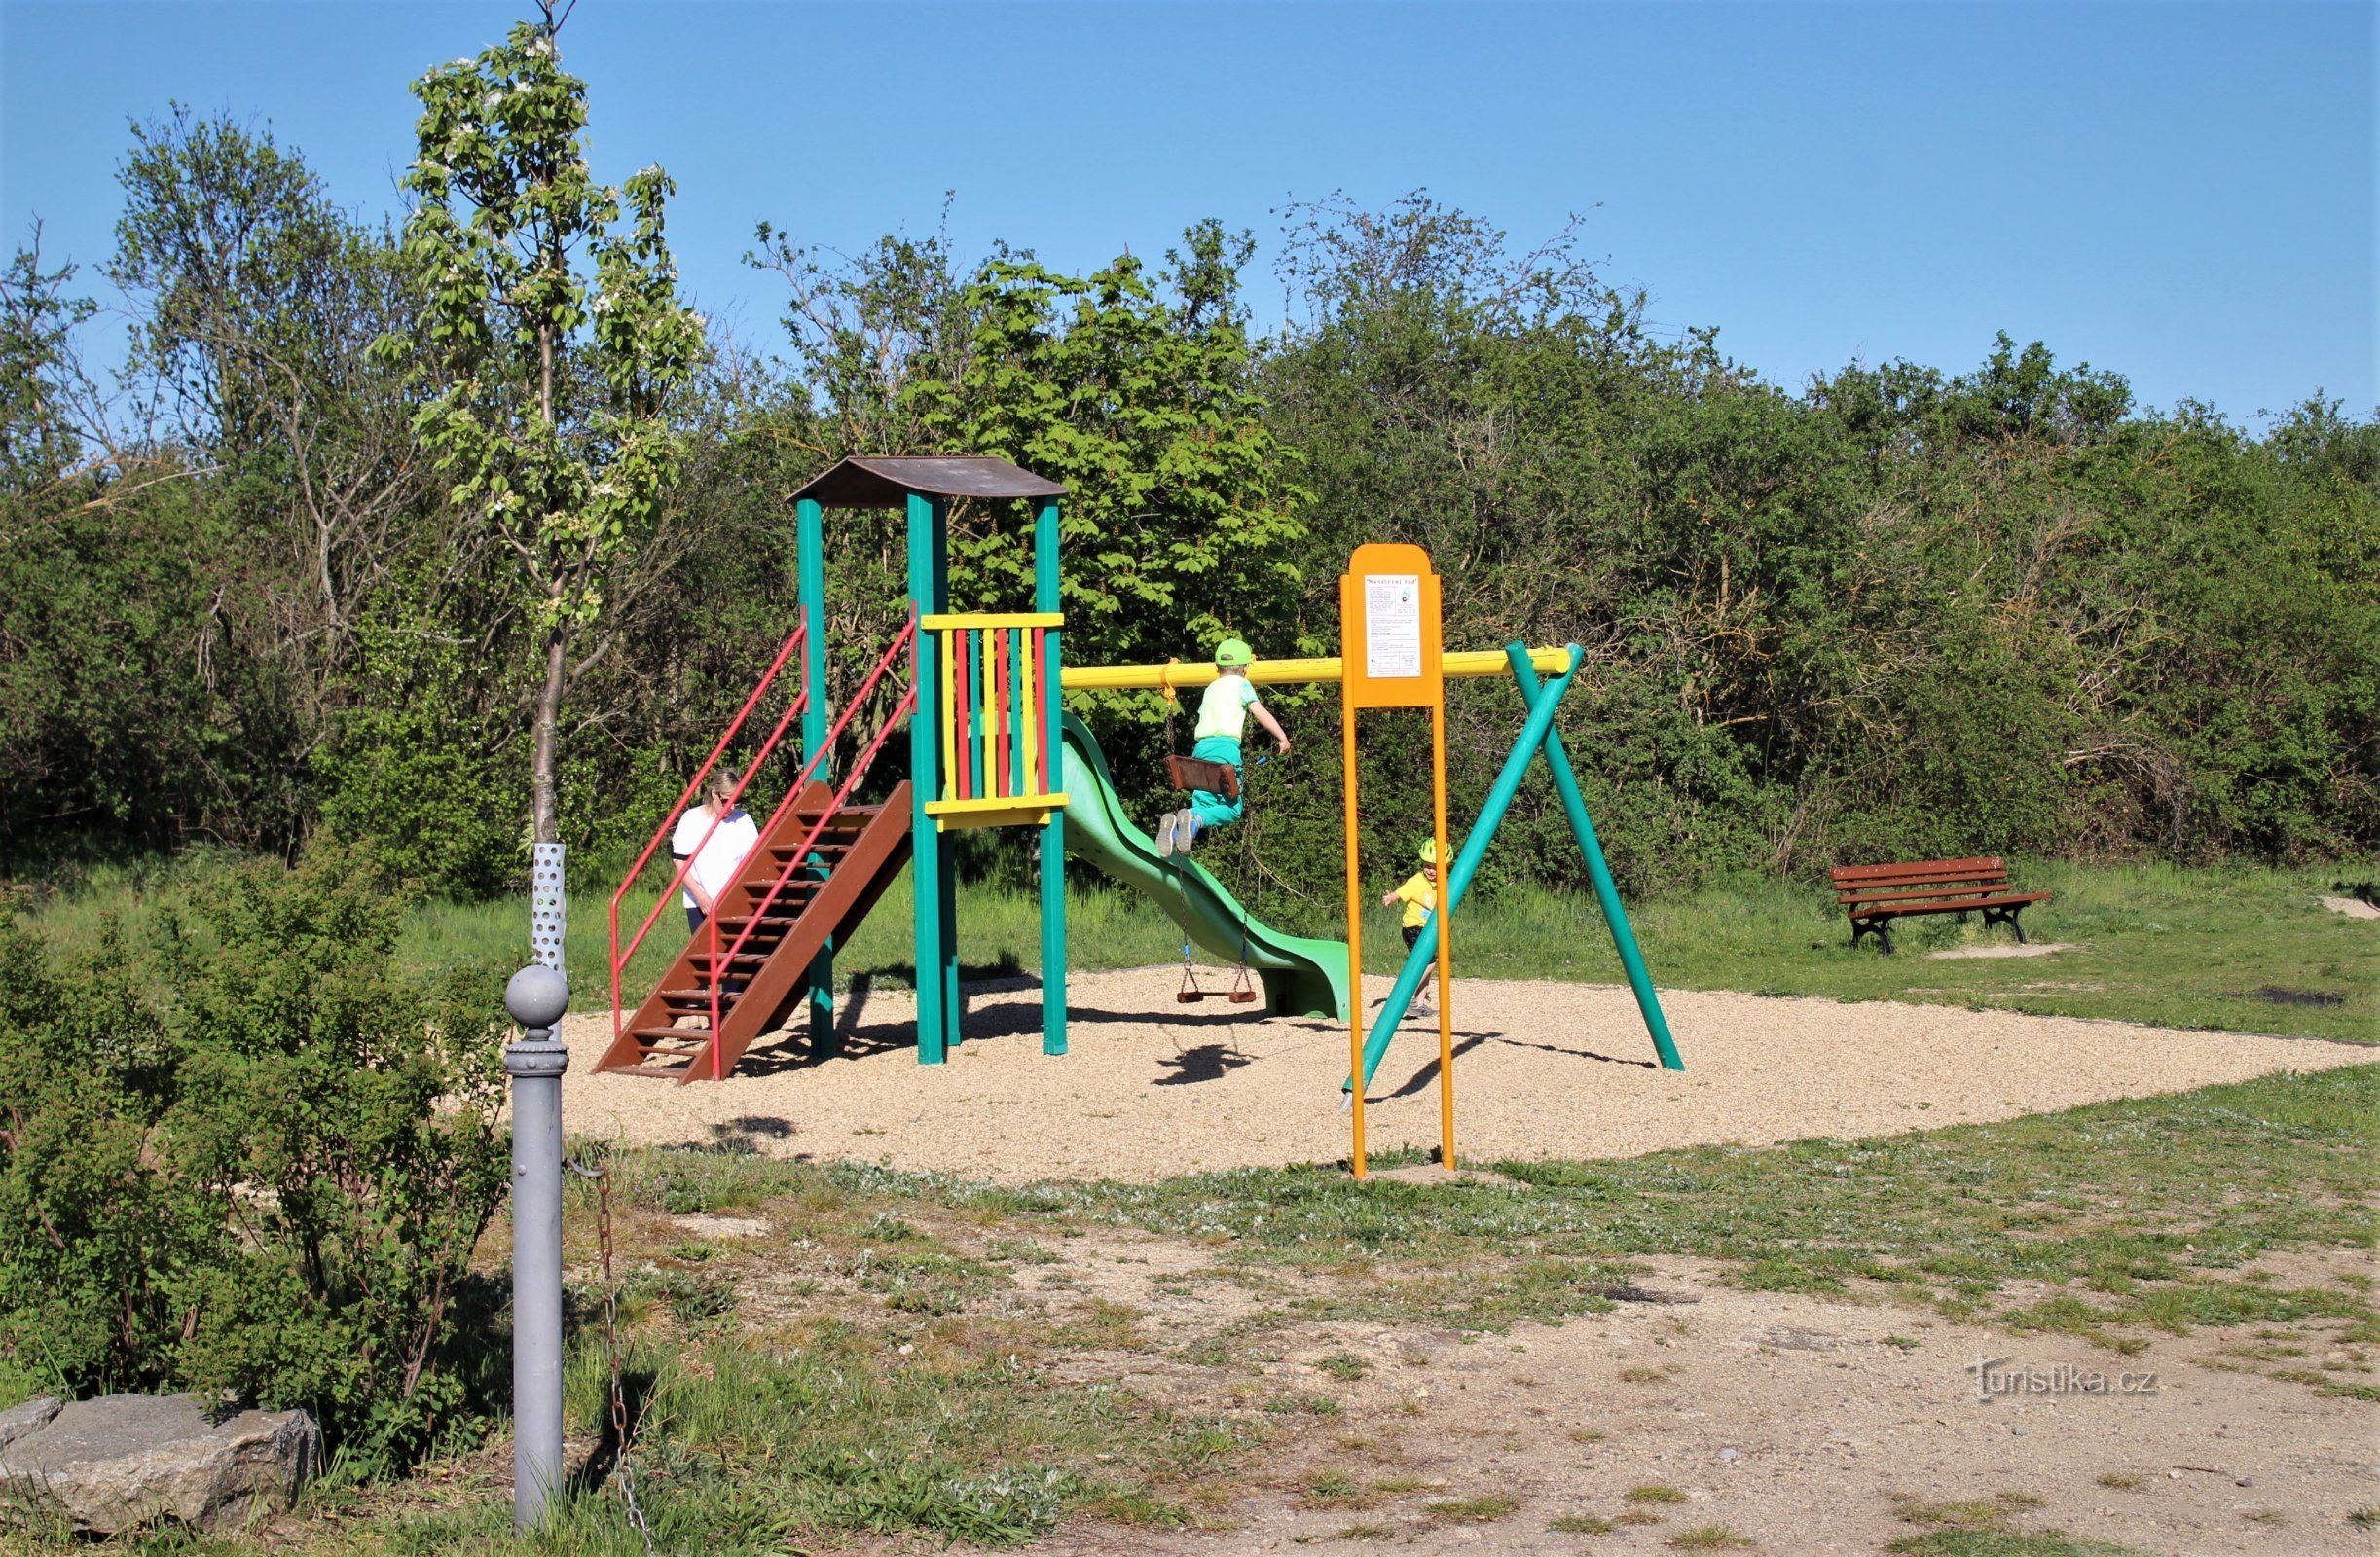 Área de descanso e parque infantil